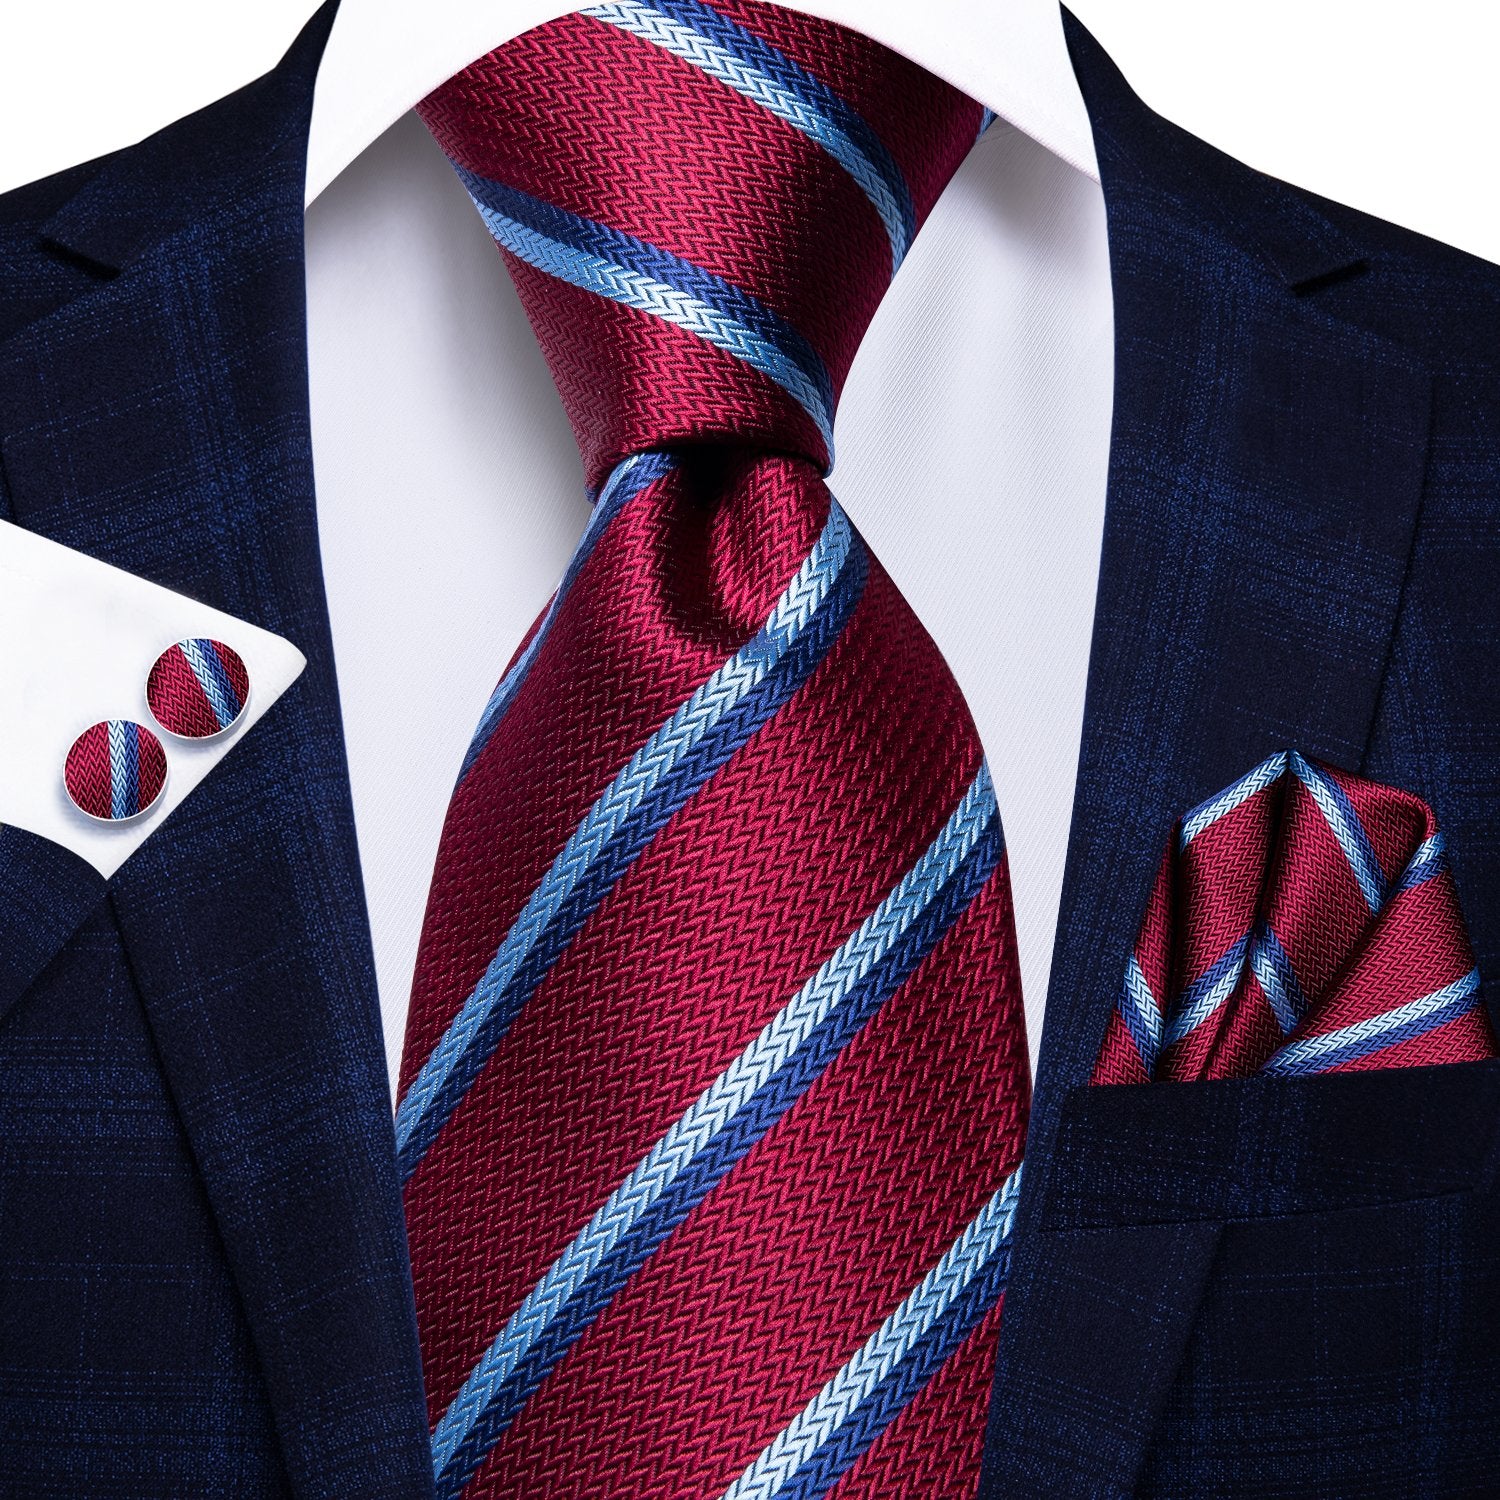 Burgundy Red Striped Tie Handkerchief Cufflinks Set with Wedding Brooch